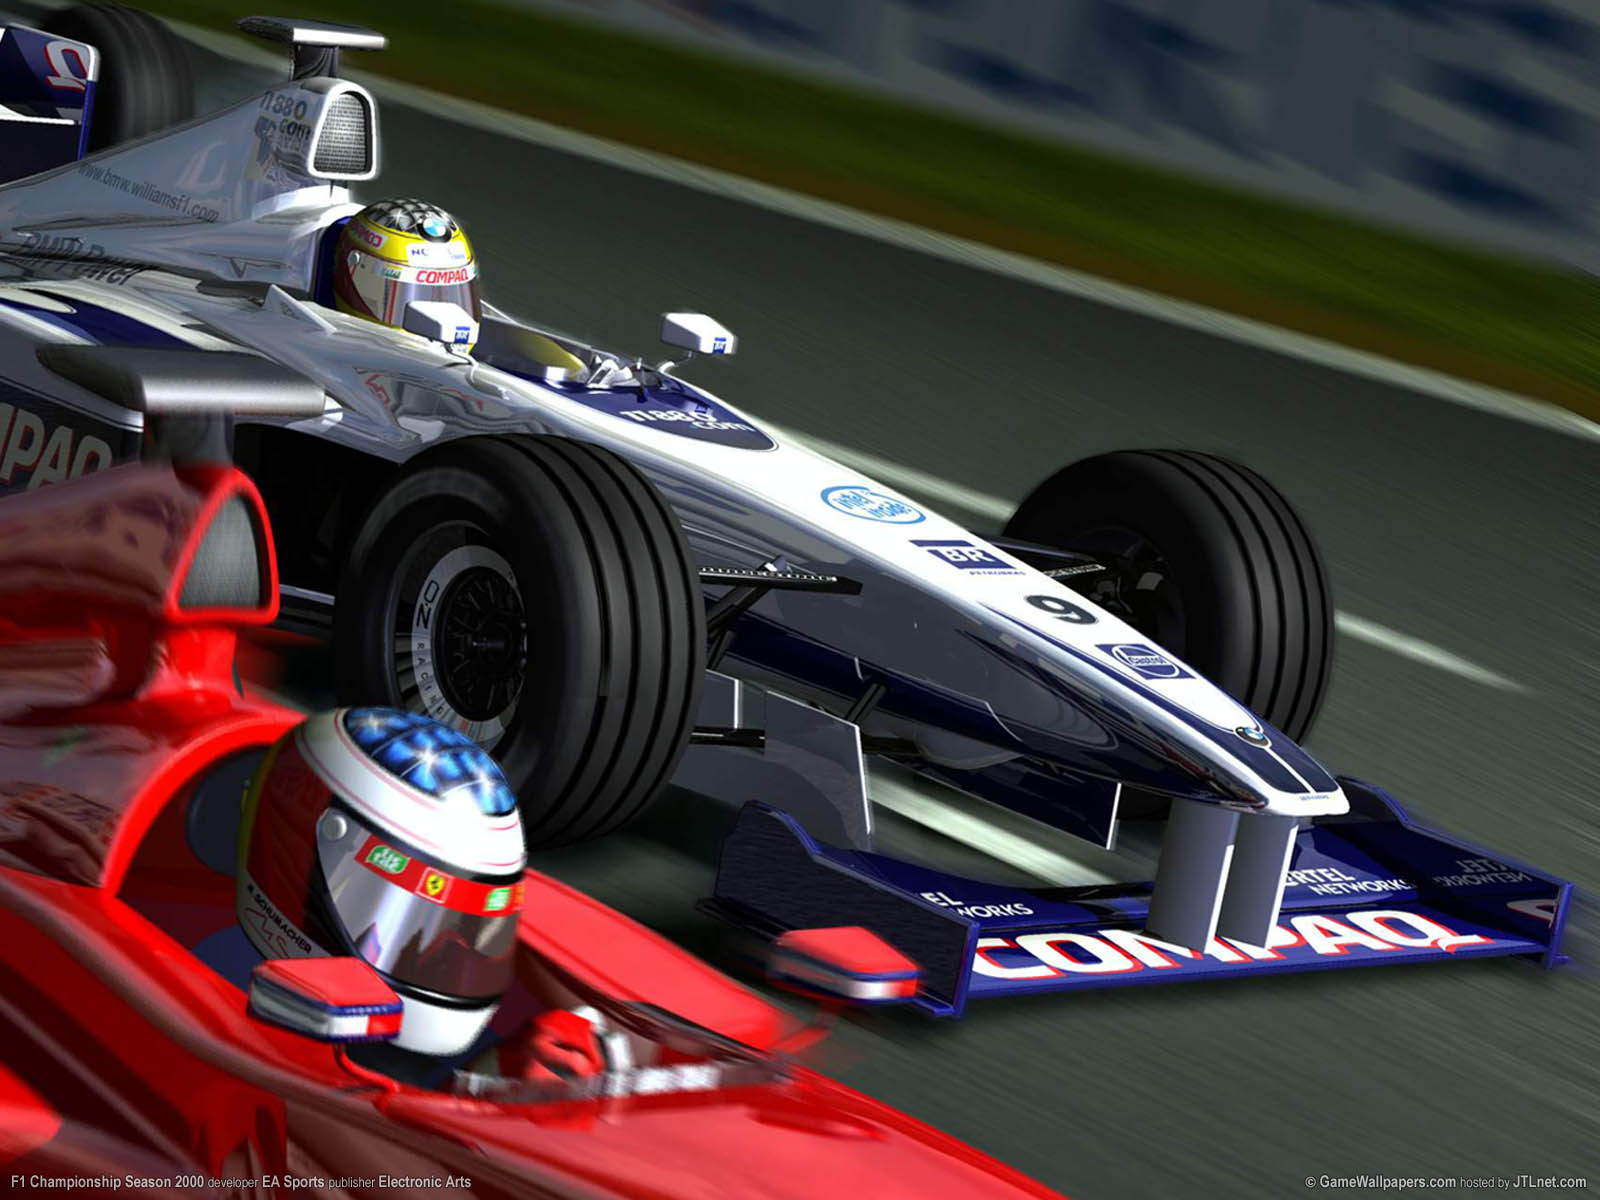 F1 Championship Season 2000 fond d'cran 01 1600x1200